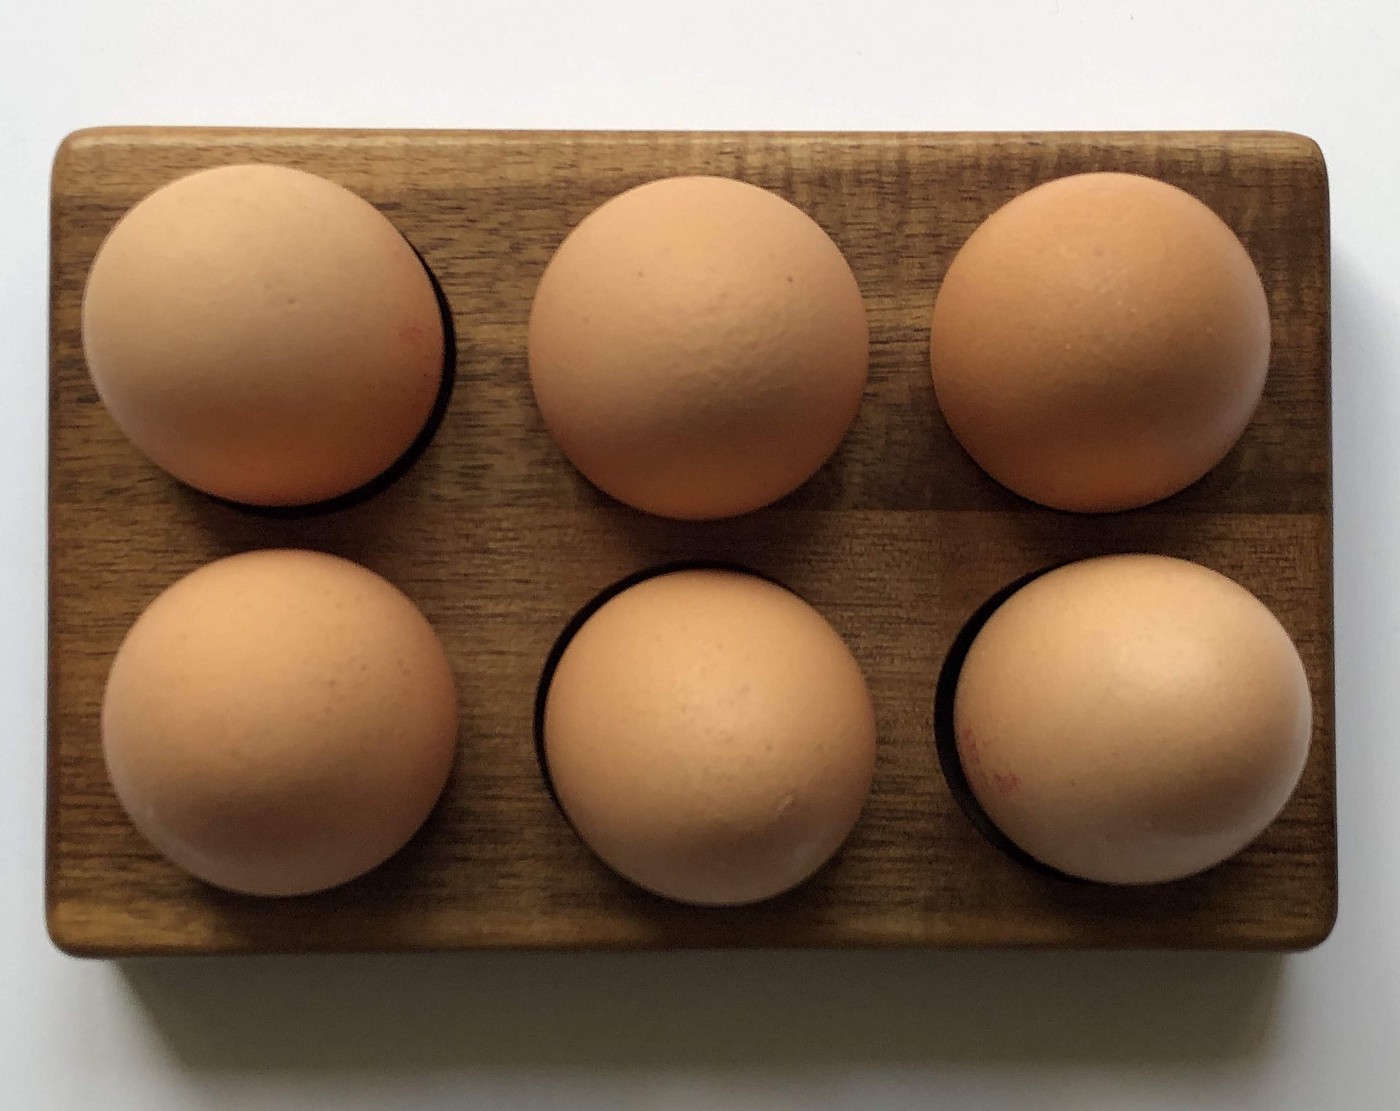 half a dozen brown eggs in a carton